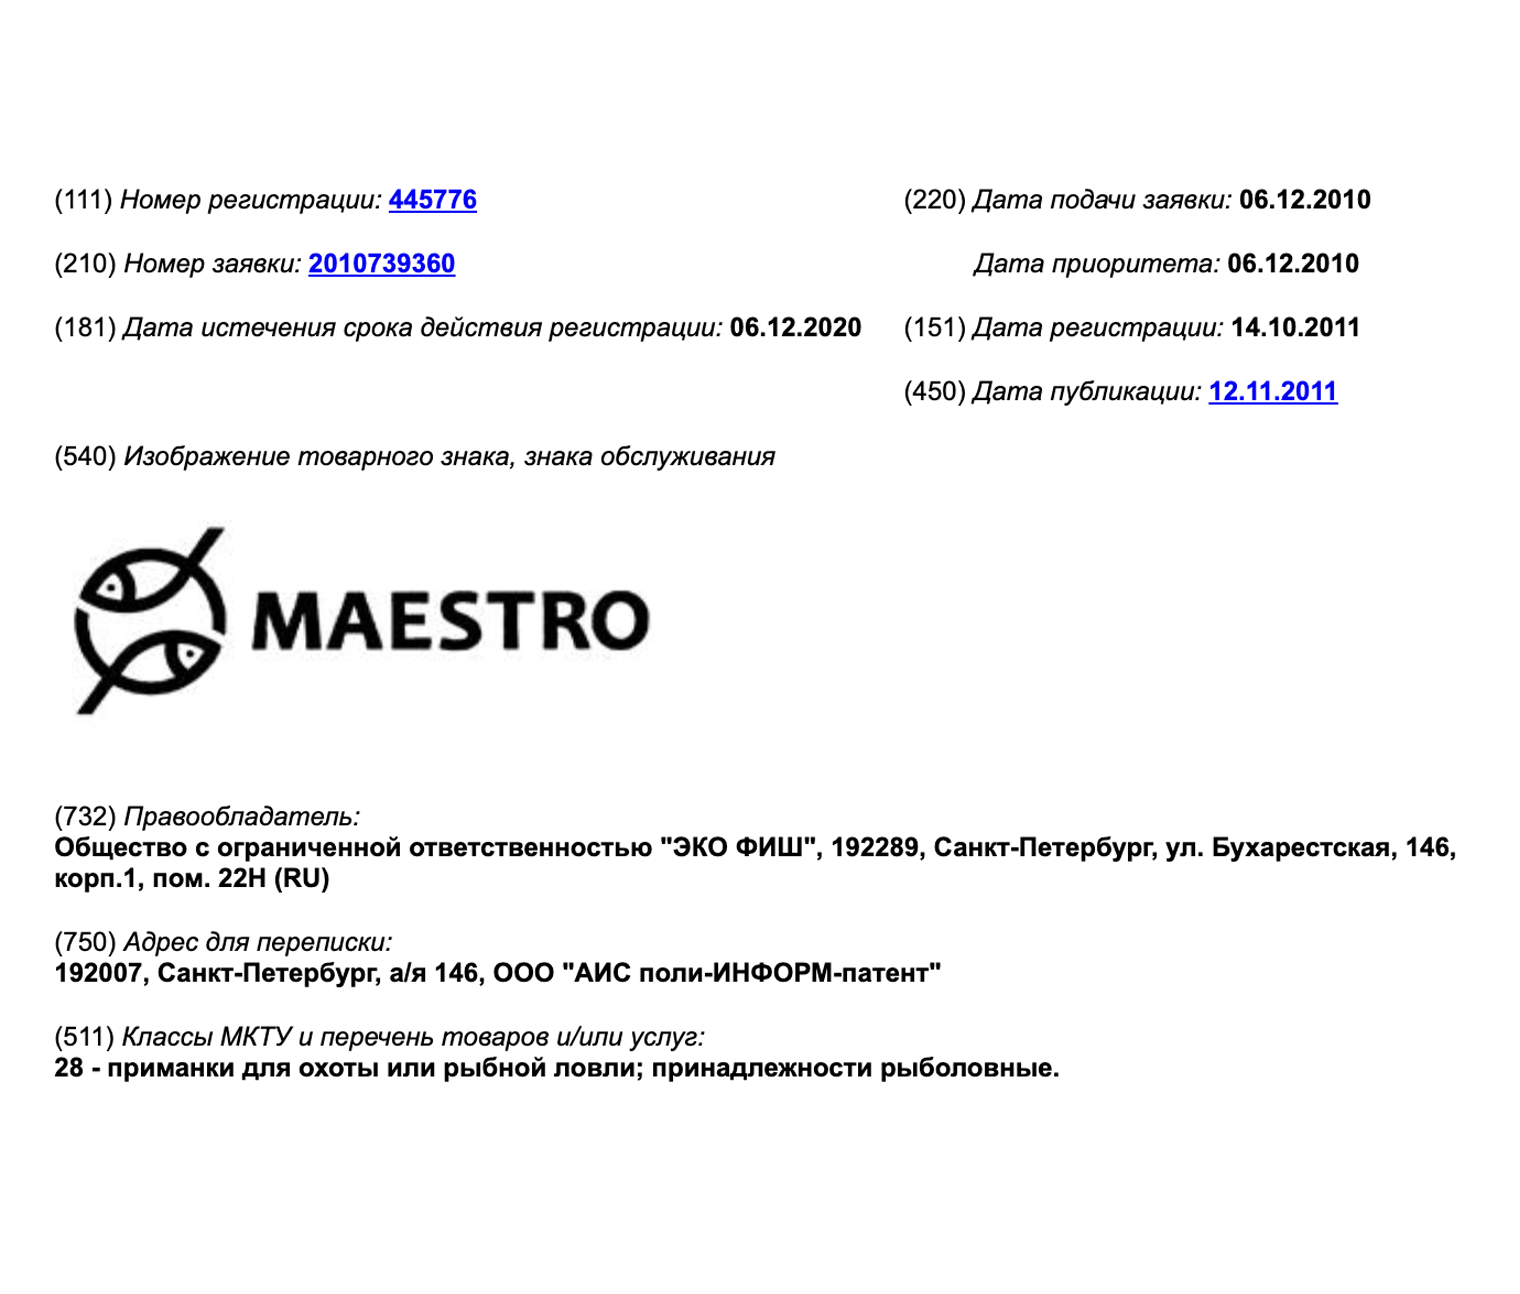 Две компании зарегистрировали товарные знаки с названием Maestro. Это возможно, так как они сделали это в разных сферах — классах МКТУ. Источник: fips.ru